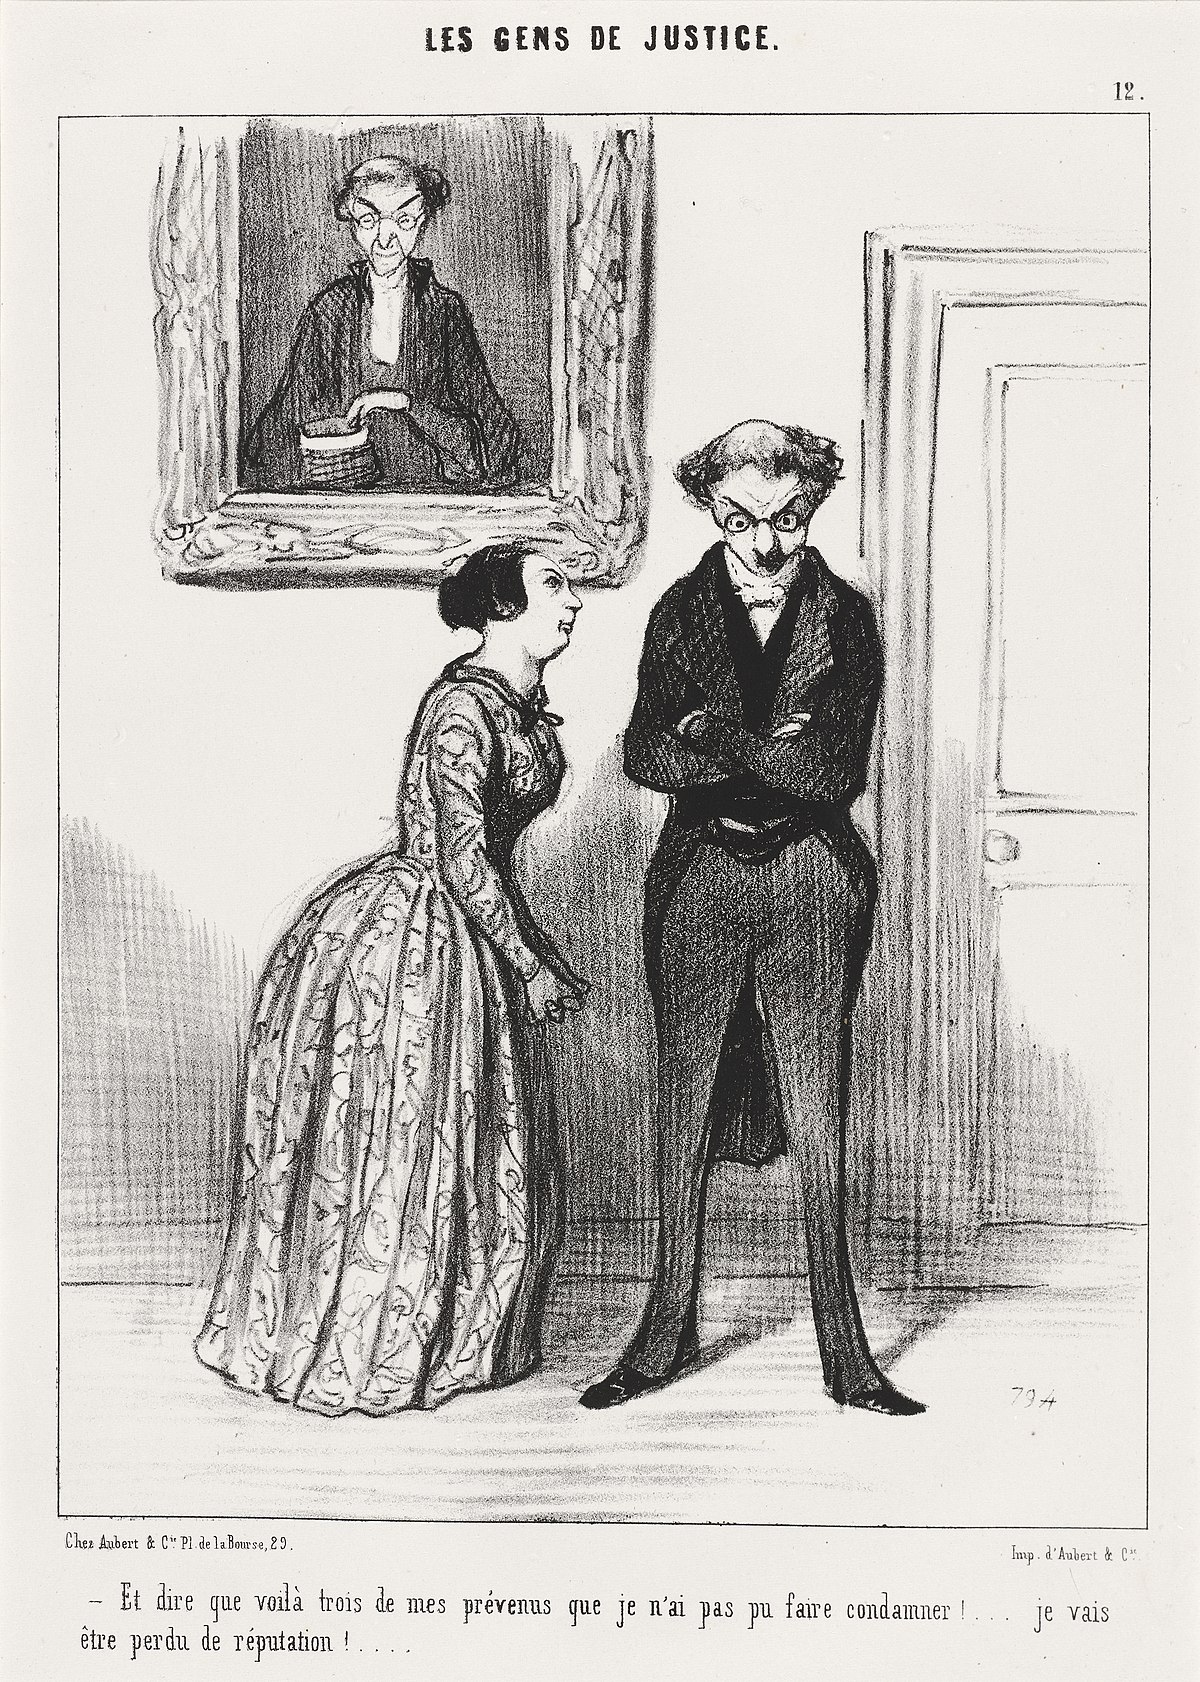 File Honore Daumier Et Dire Que Voila Trois Prevenu Que Je N Ai Pas Pu Faire Condamner 1845 Nga Jpg Wikimedia Commons